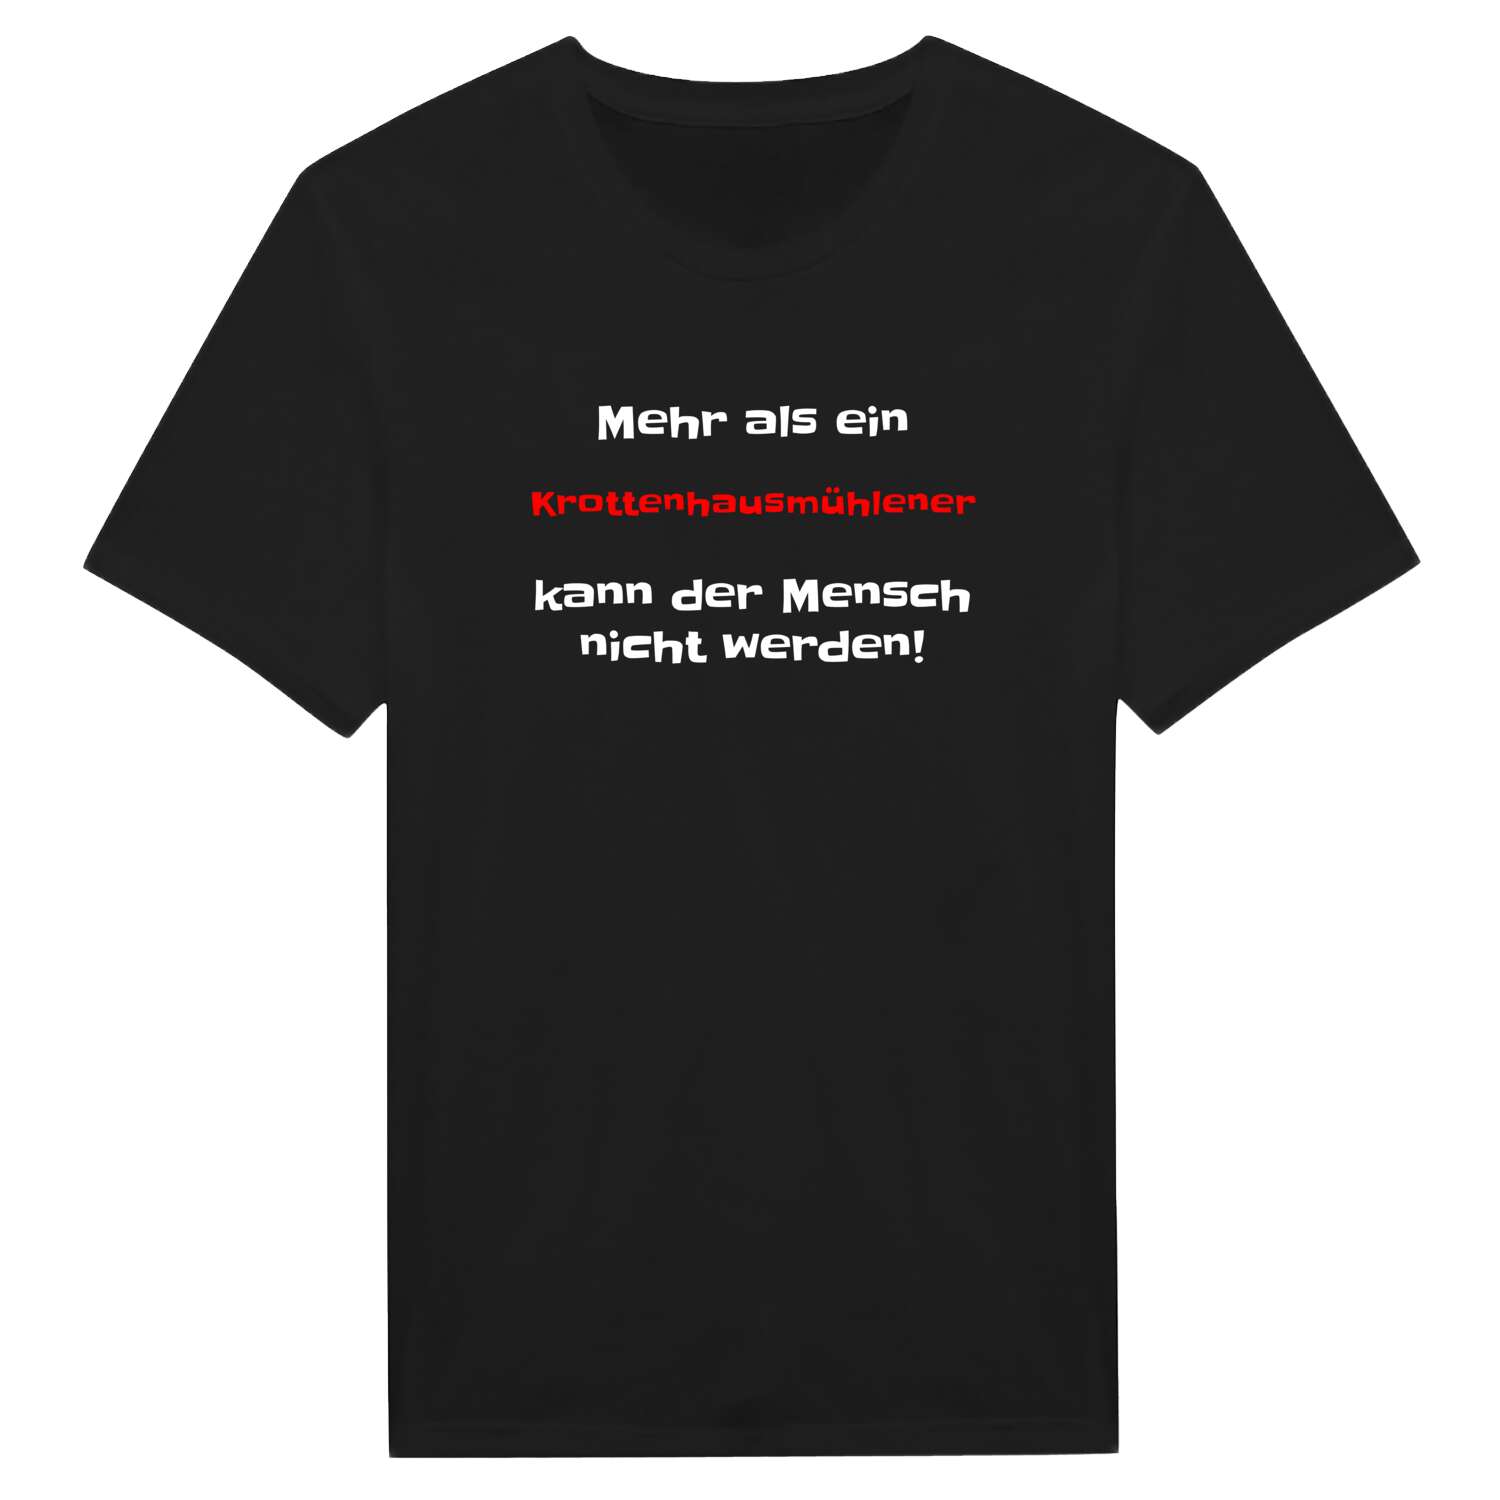 Krottenhausmühle T-Shirt »Mehr als ein«